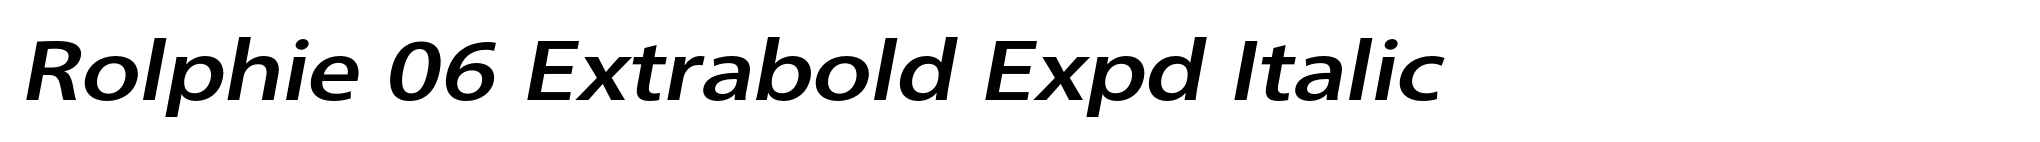 Rolphie 06 Extrabold Expd Italic image